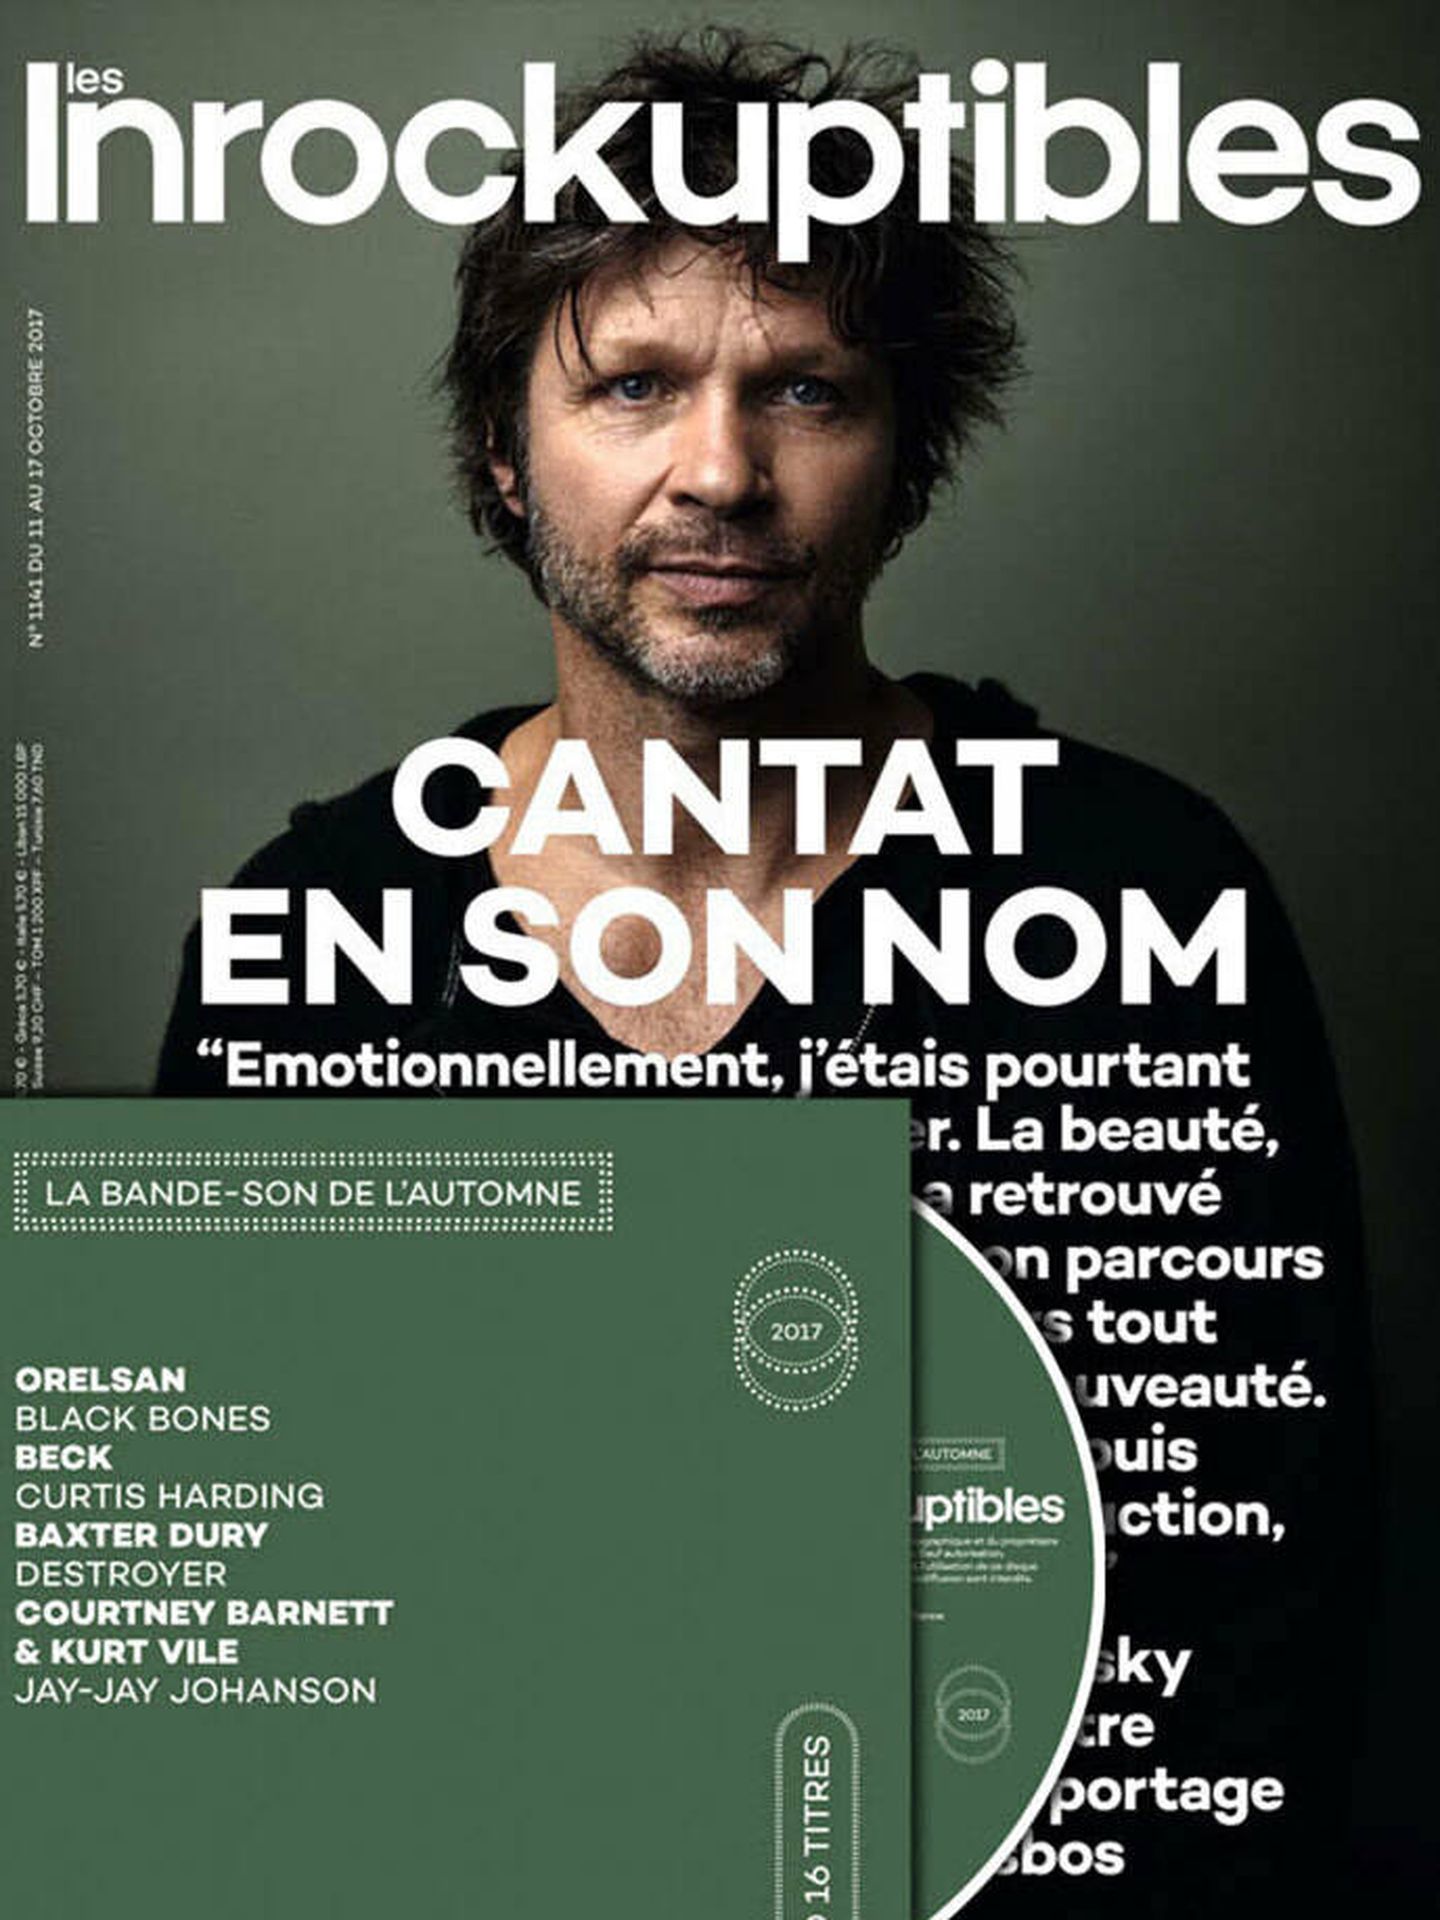 La portada de 'Los Inrockuptibles' dedicada a Bertrand Cantant